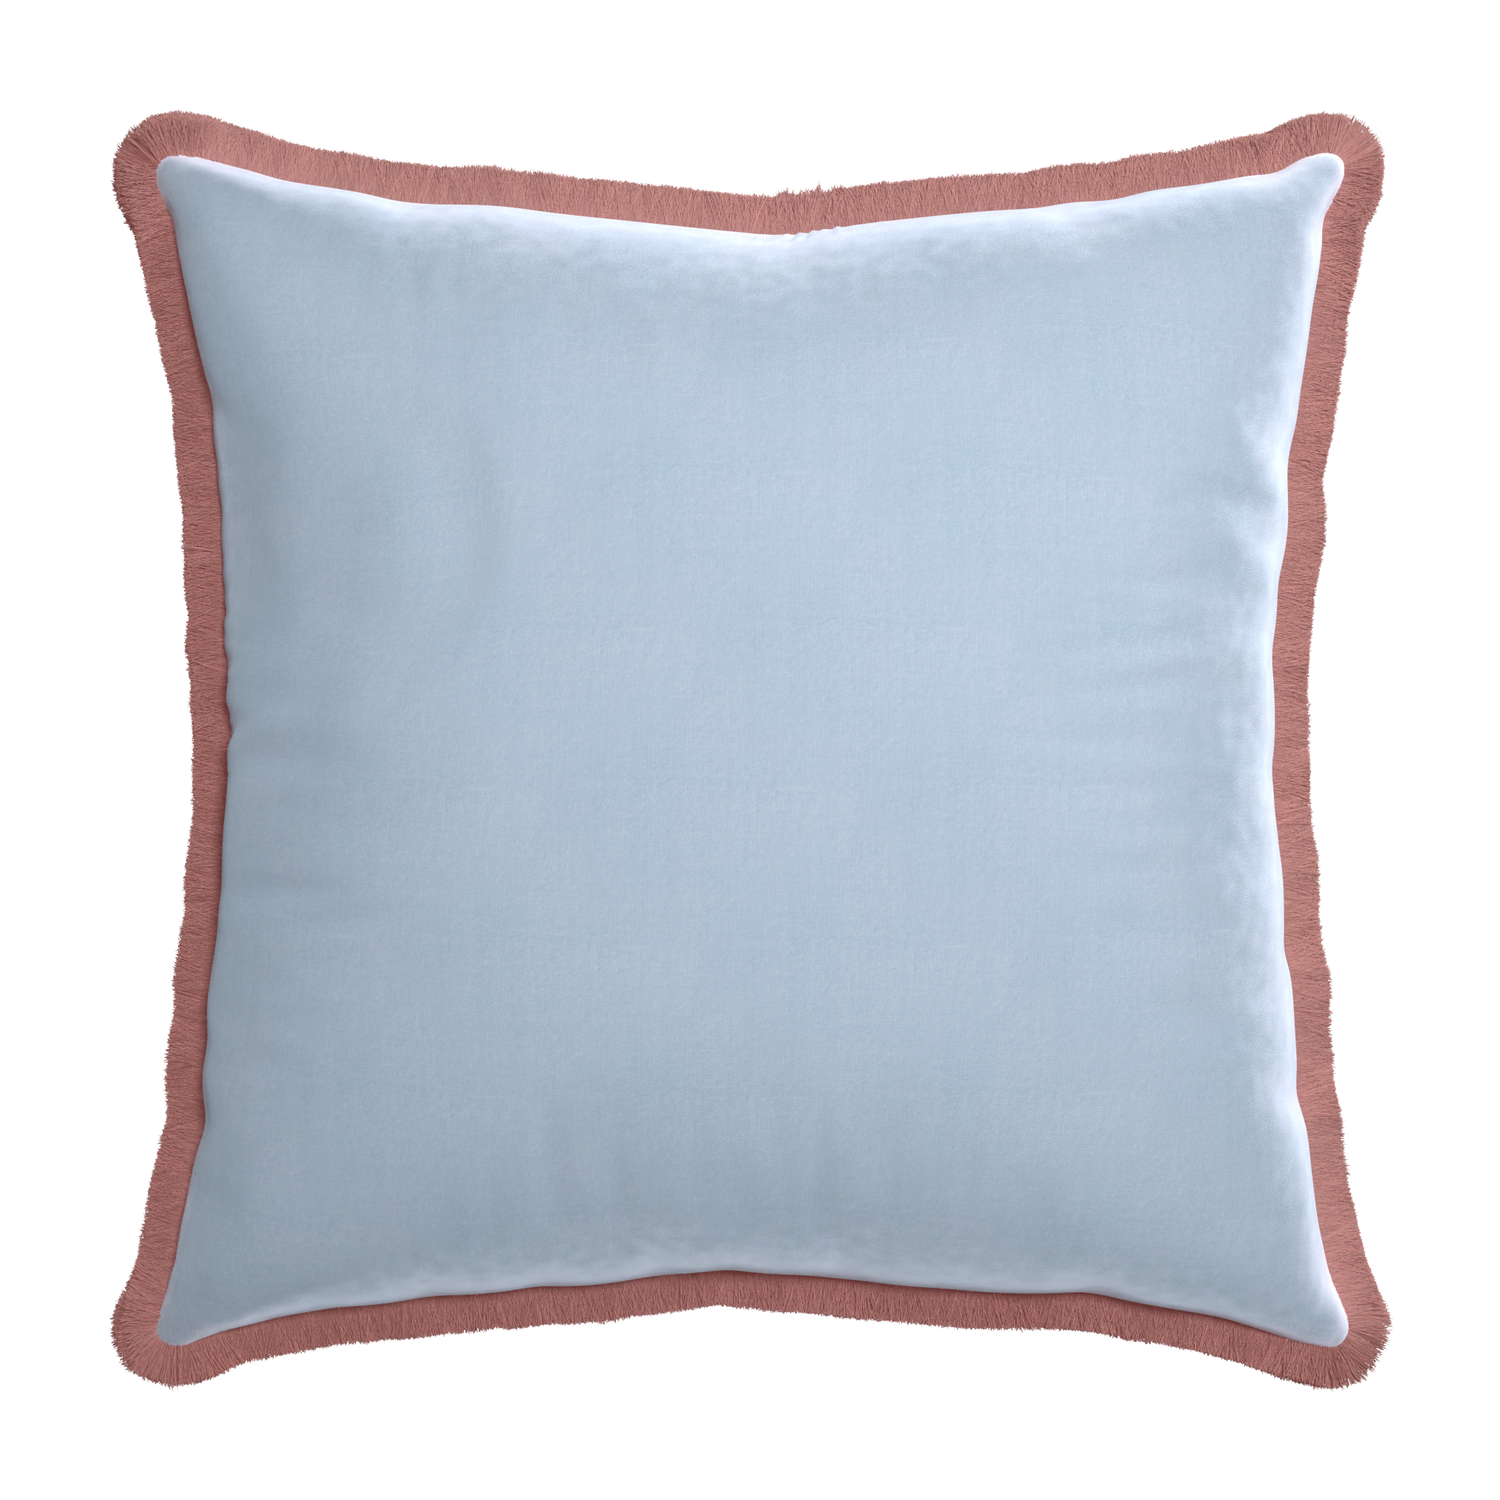 square light blue velvet pillow with dusty rose fringe